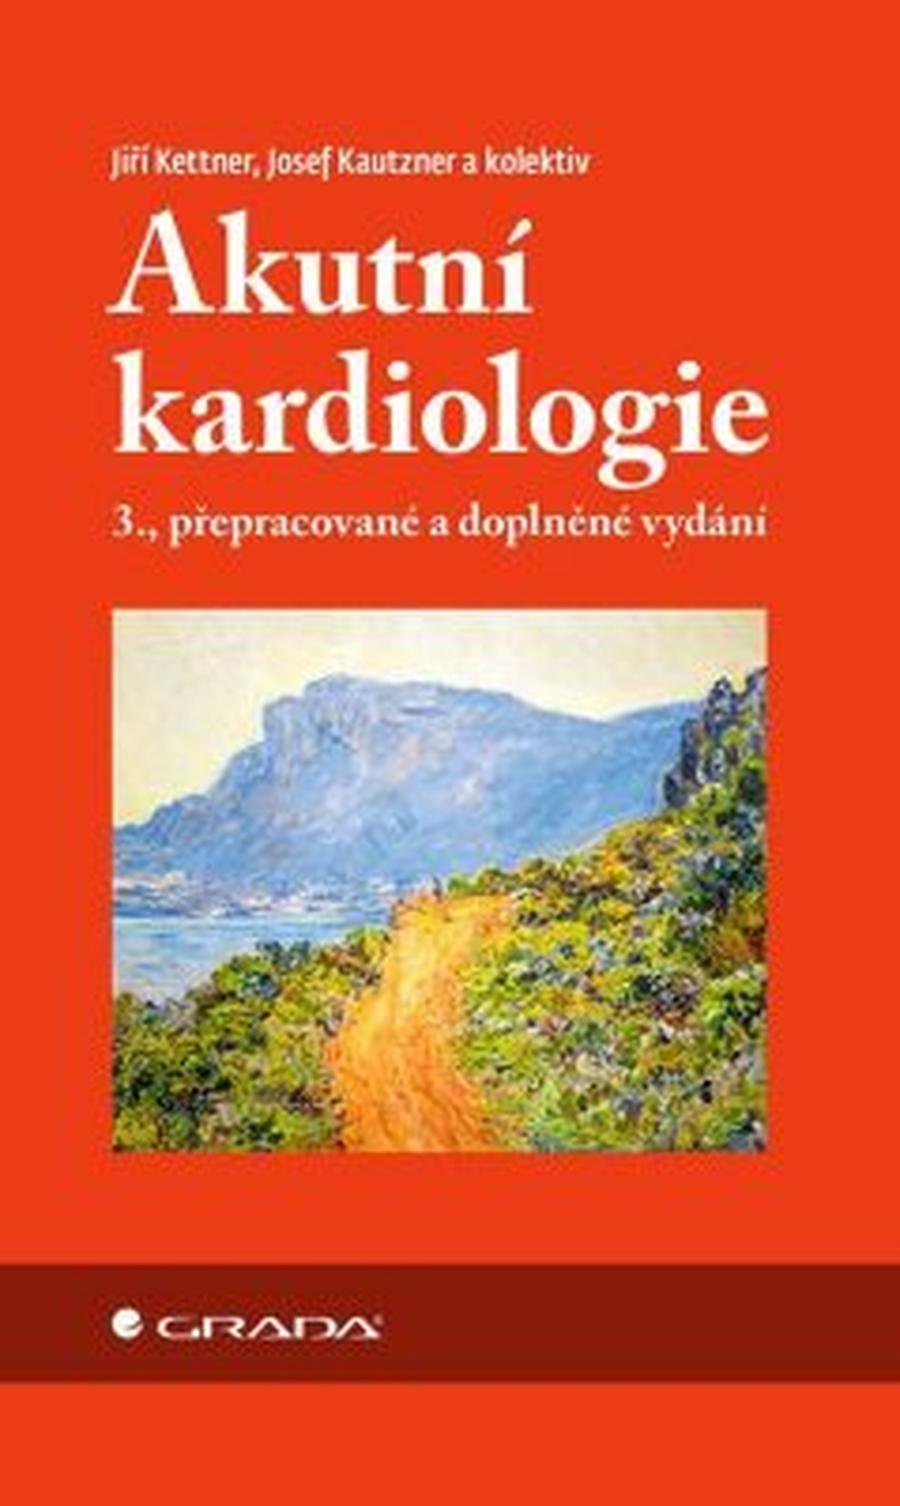 Akutní kardiologie - Josef Kautzner, Jiří Kettner